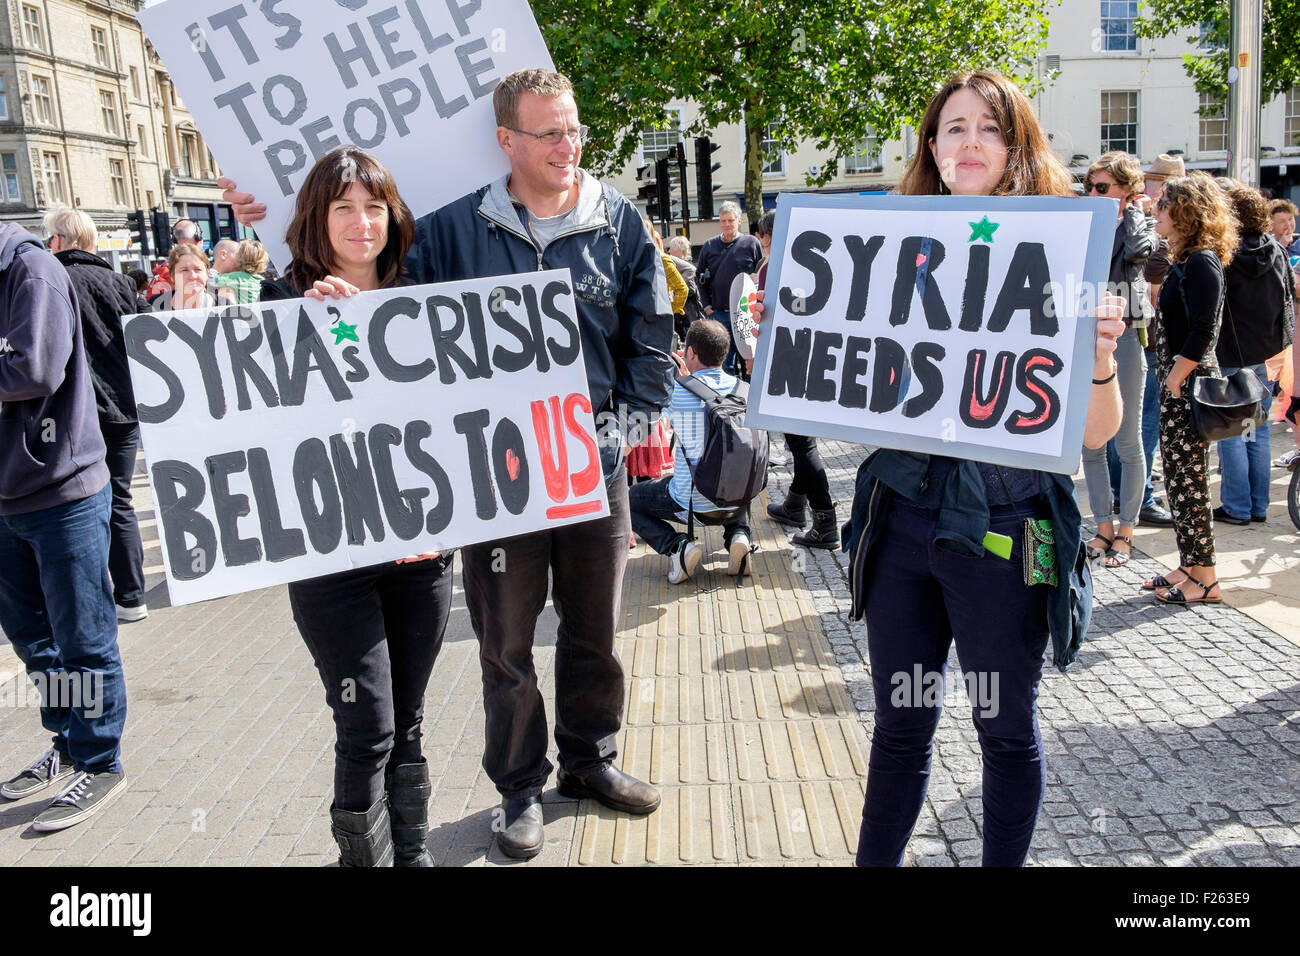 Bristol, UK, le 12 septembre, 2015. Les protestataires sont représentés comme ils mars à Bristol au cours d'une manifestation en faveur des réfugiés. La démonstration faisait partie d'une journée nationale d'action pour appeler le gouvernement britannique à faire plus pour soutenir les réfugiés de quitter les zones de conflit au Moyen-Orient. Credit : lynchpics/Alamy Live News Banque D'Images